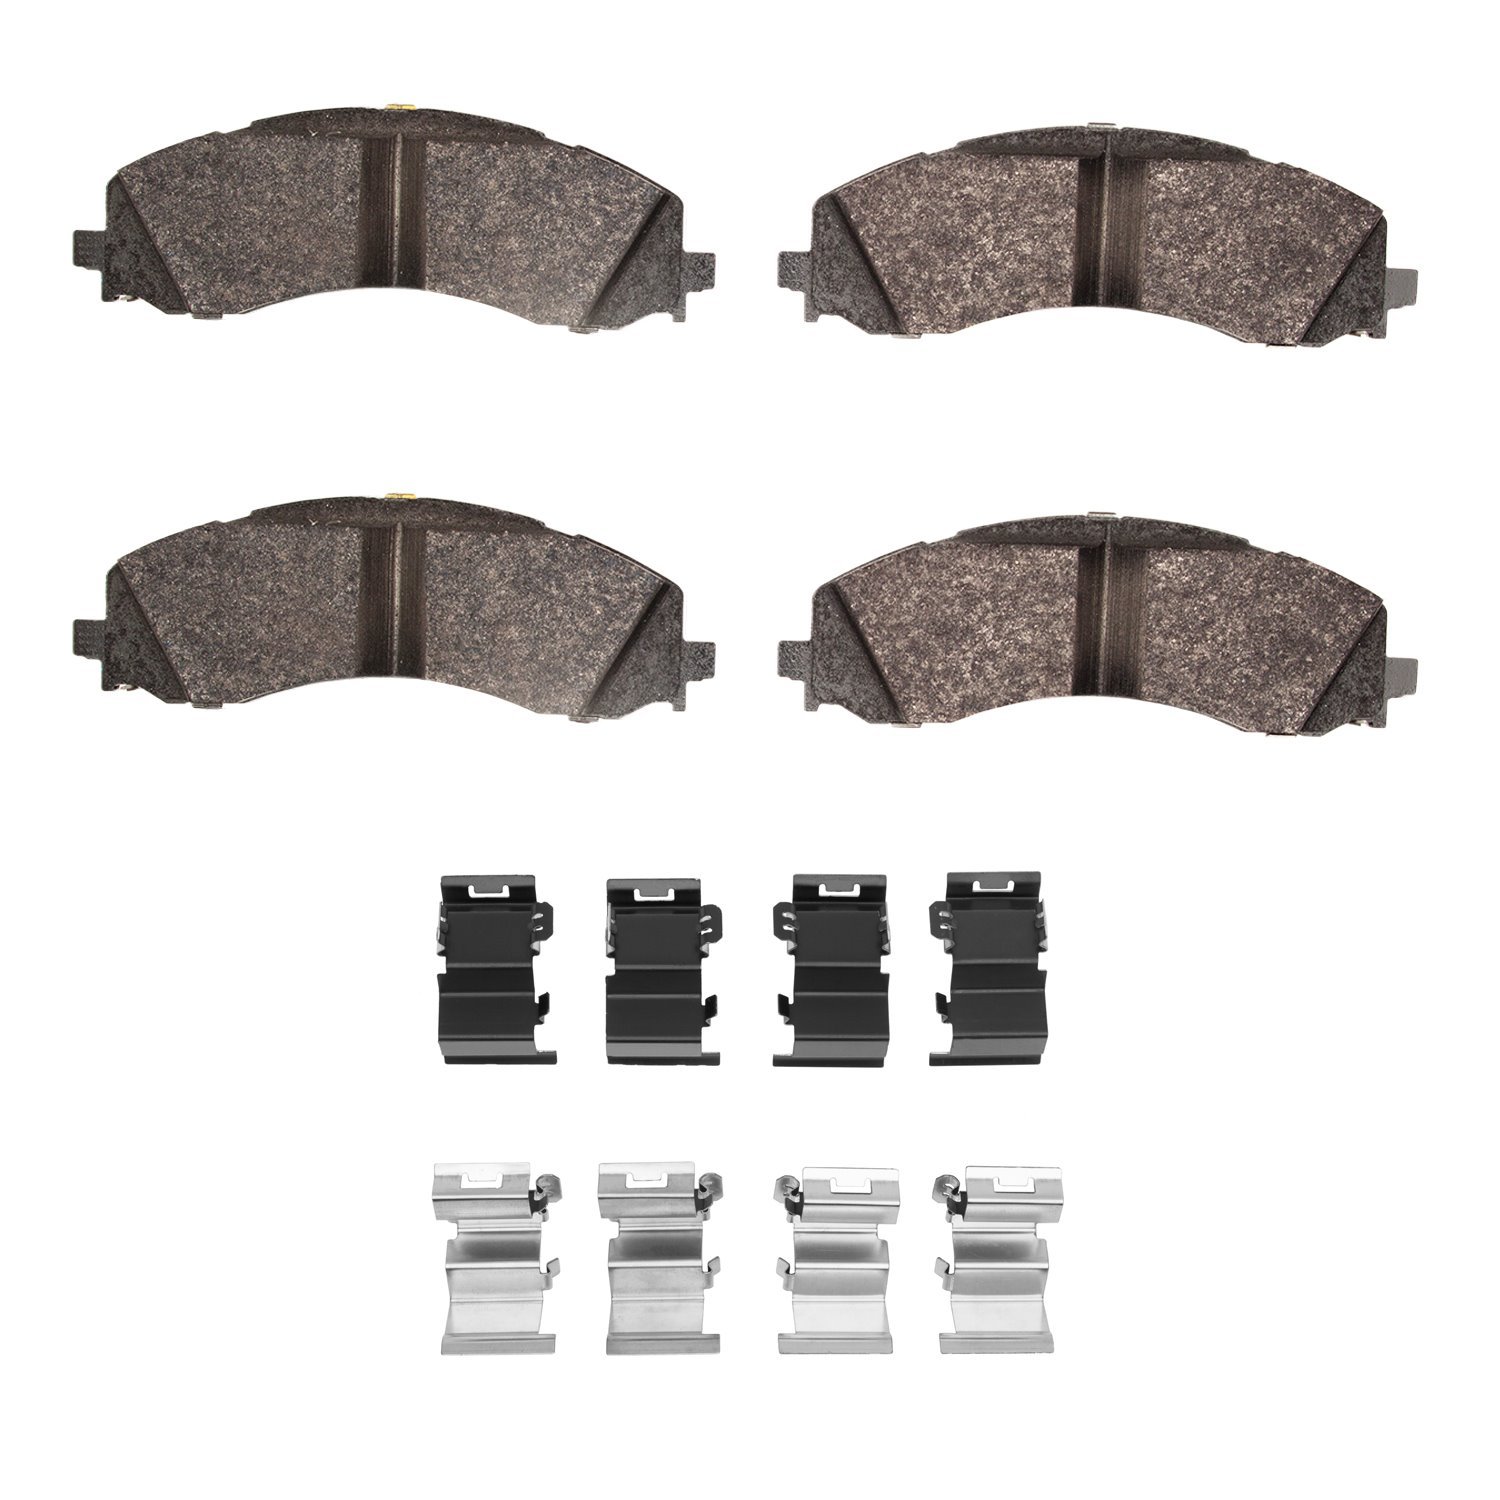 Super-Duty Brake Pads & Hardware Kit, Fits Select Mopar, Position: Front